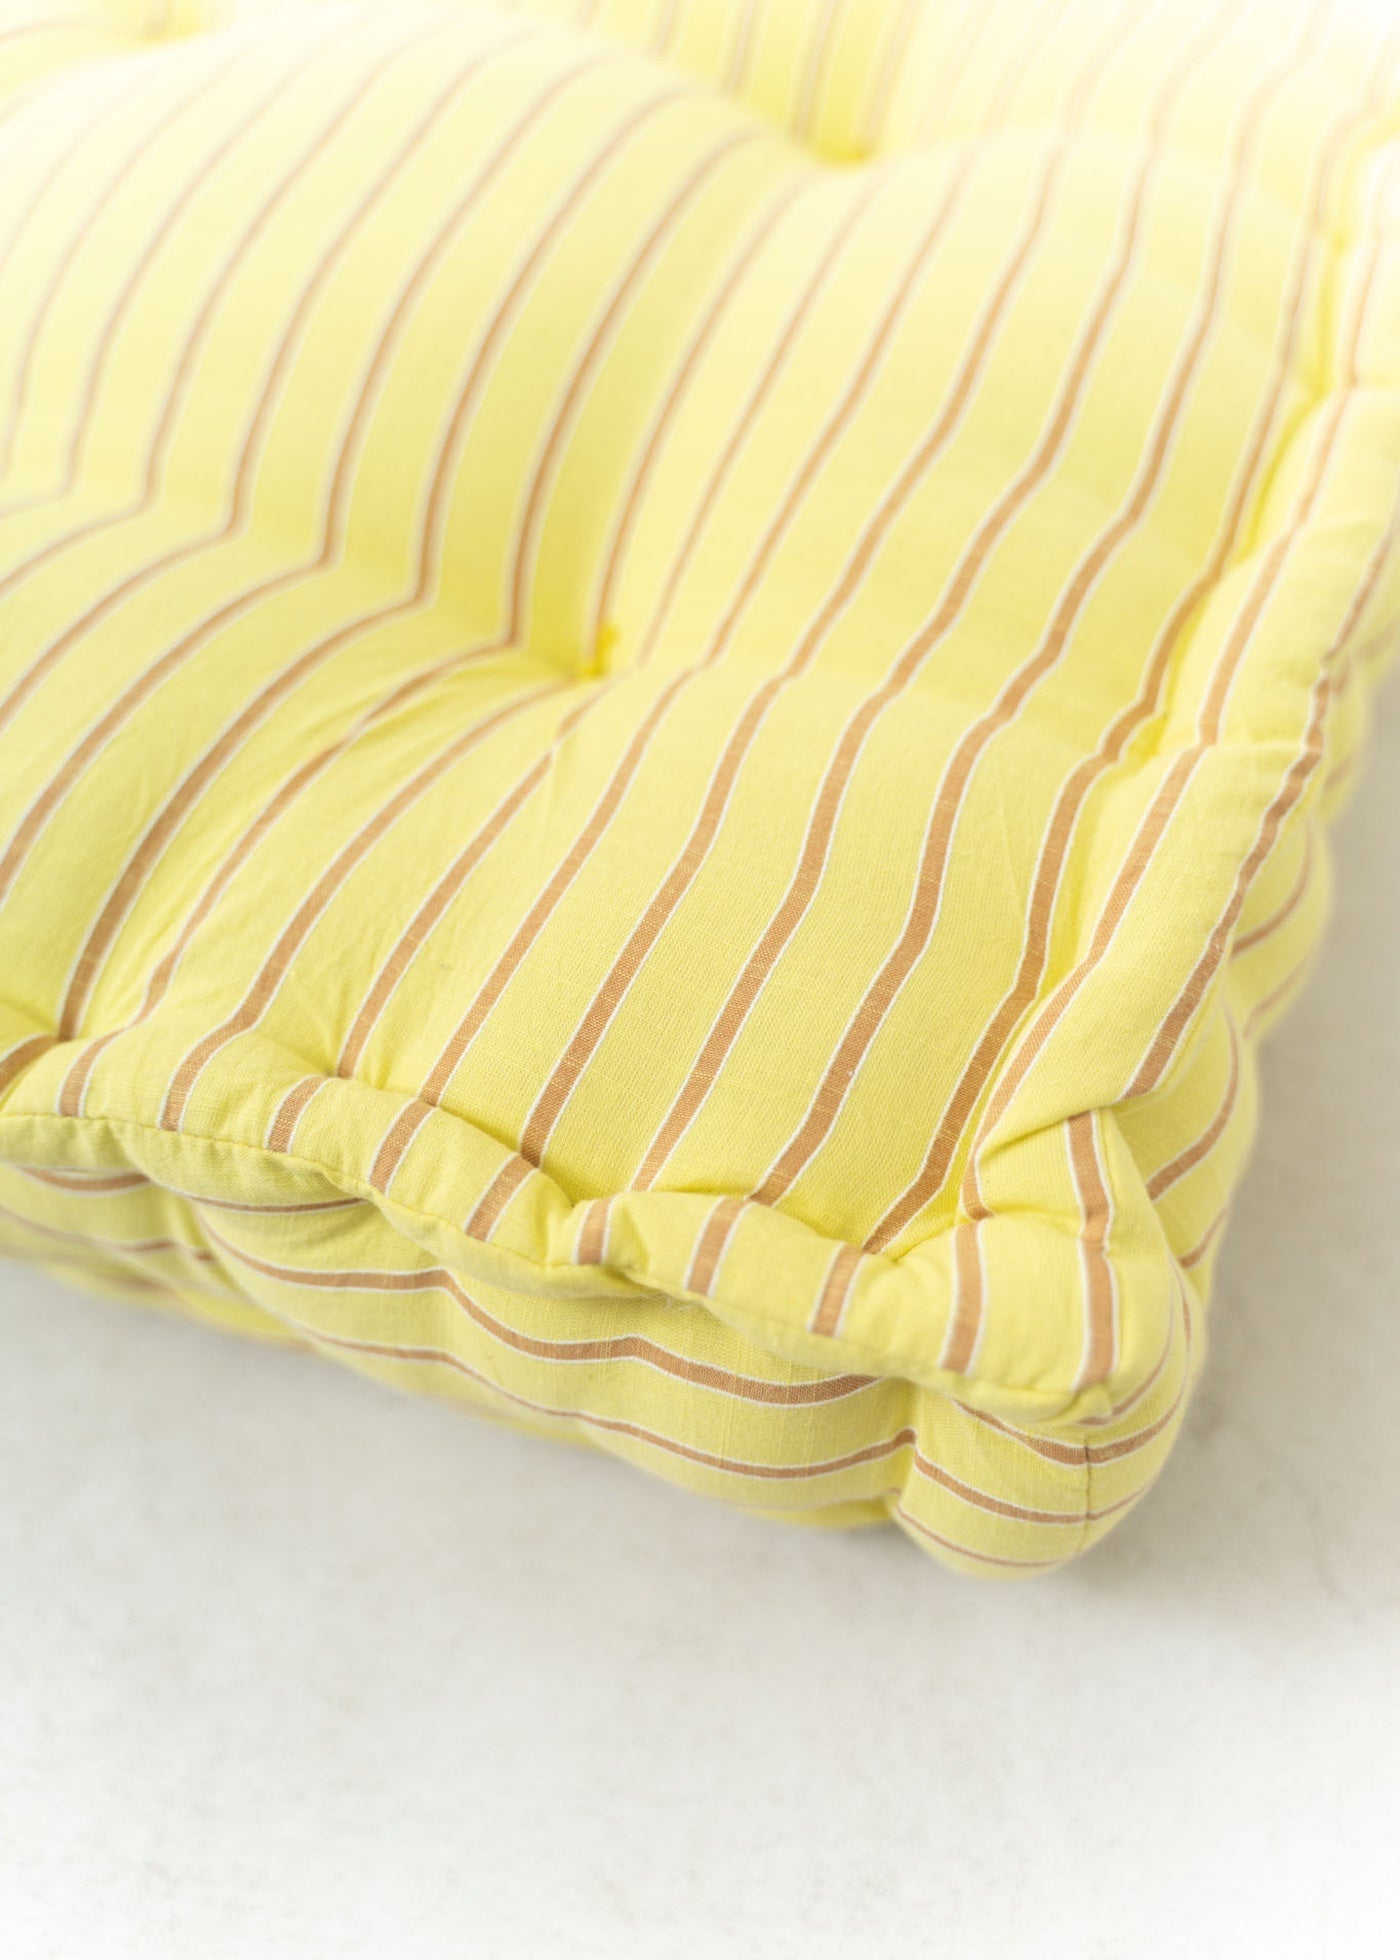 【5/10 10時発売】Cotton Stripe Seat Cushion With Handle